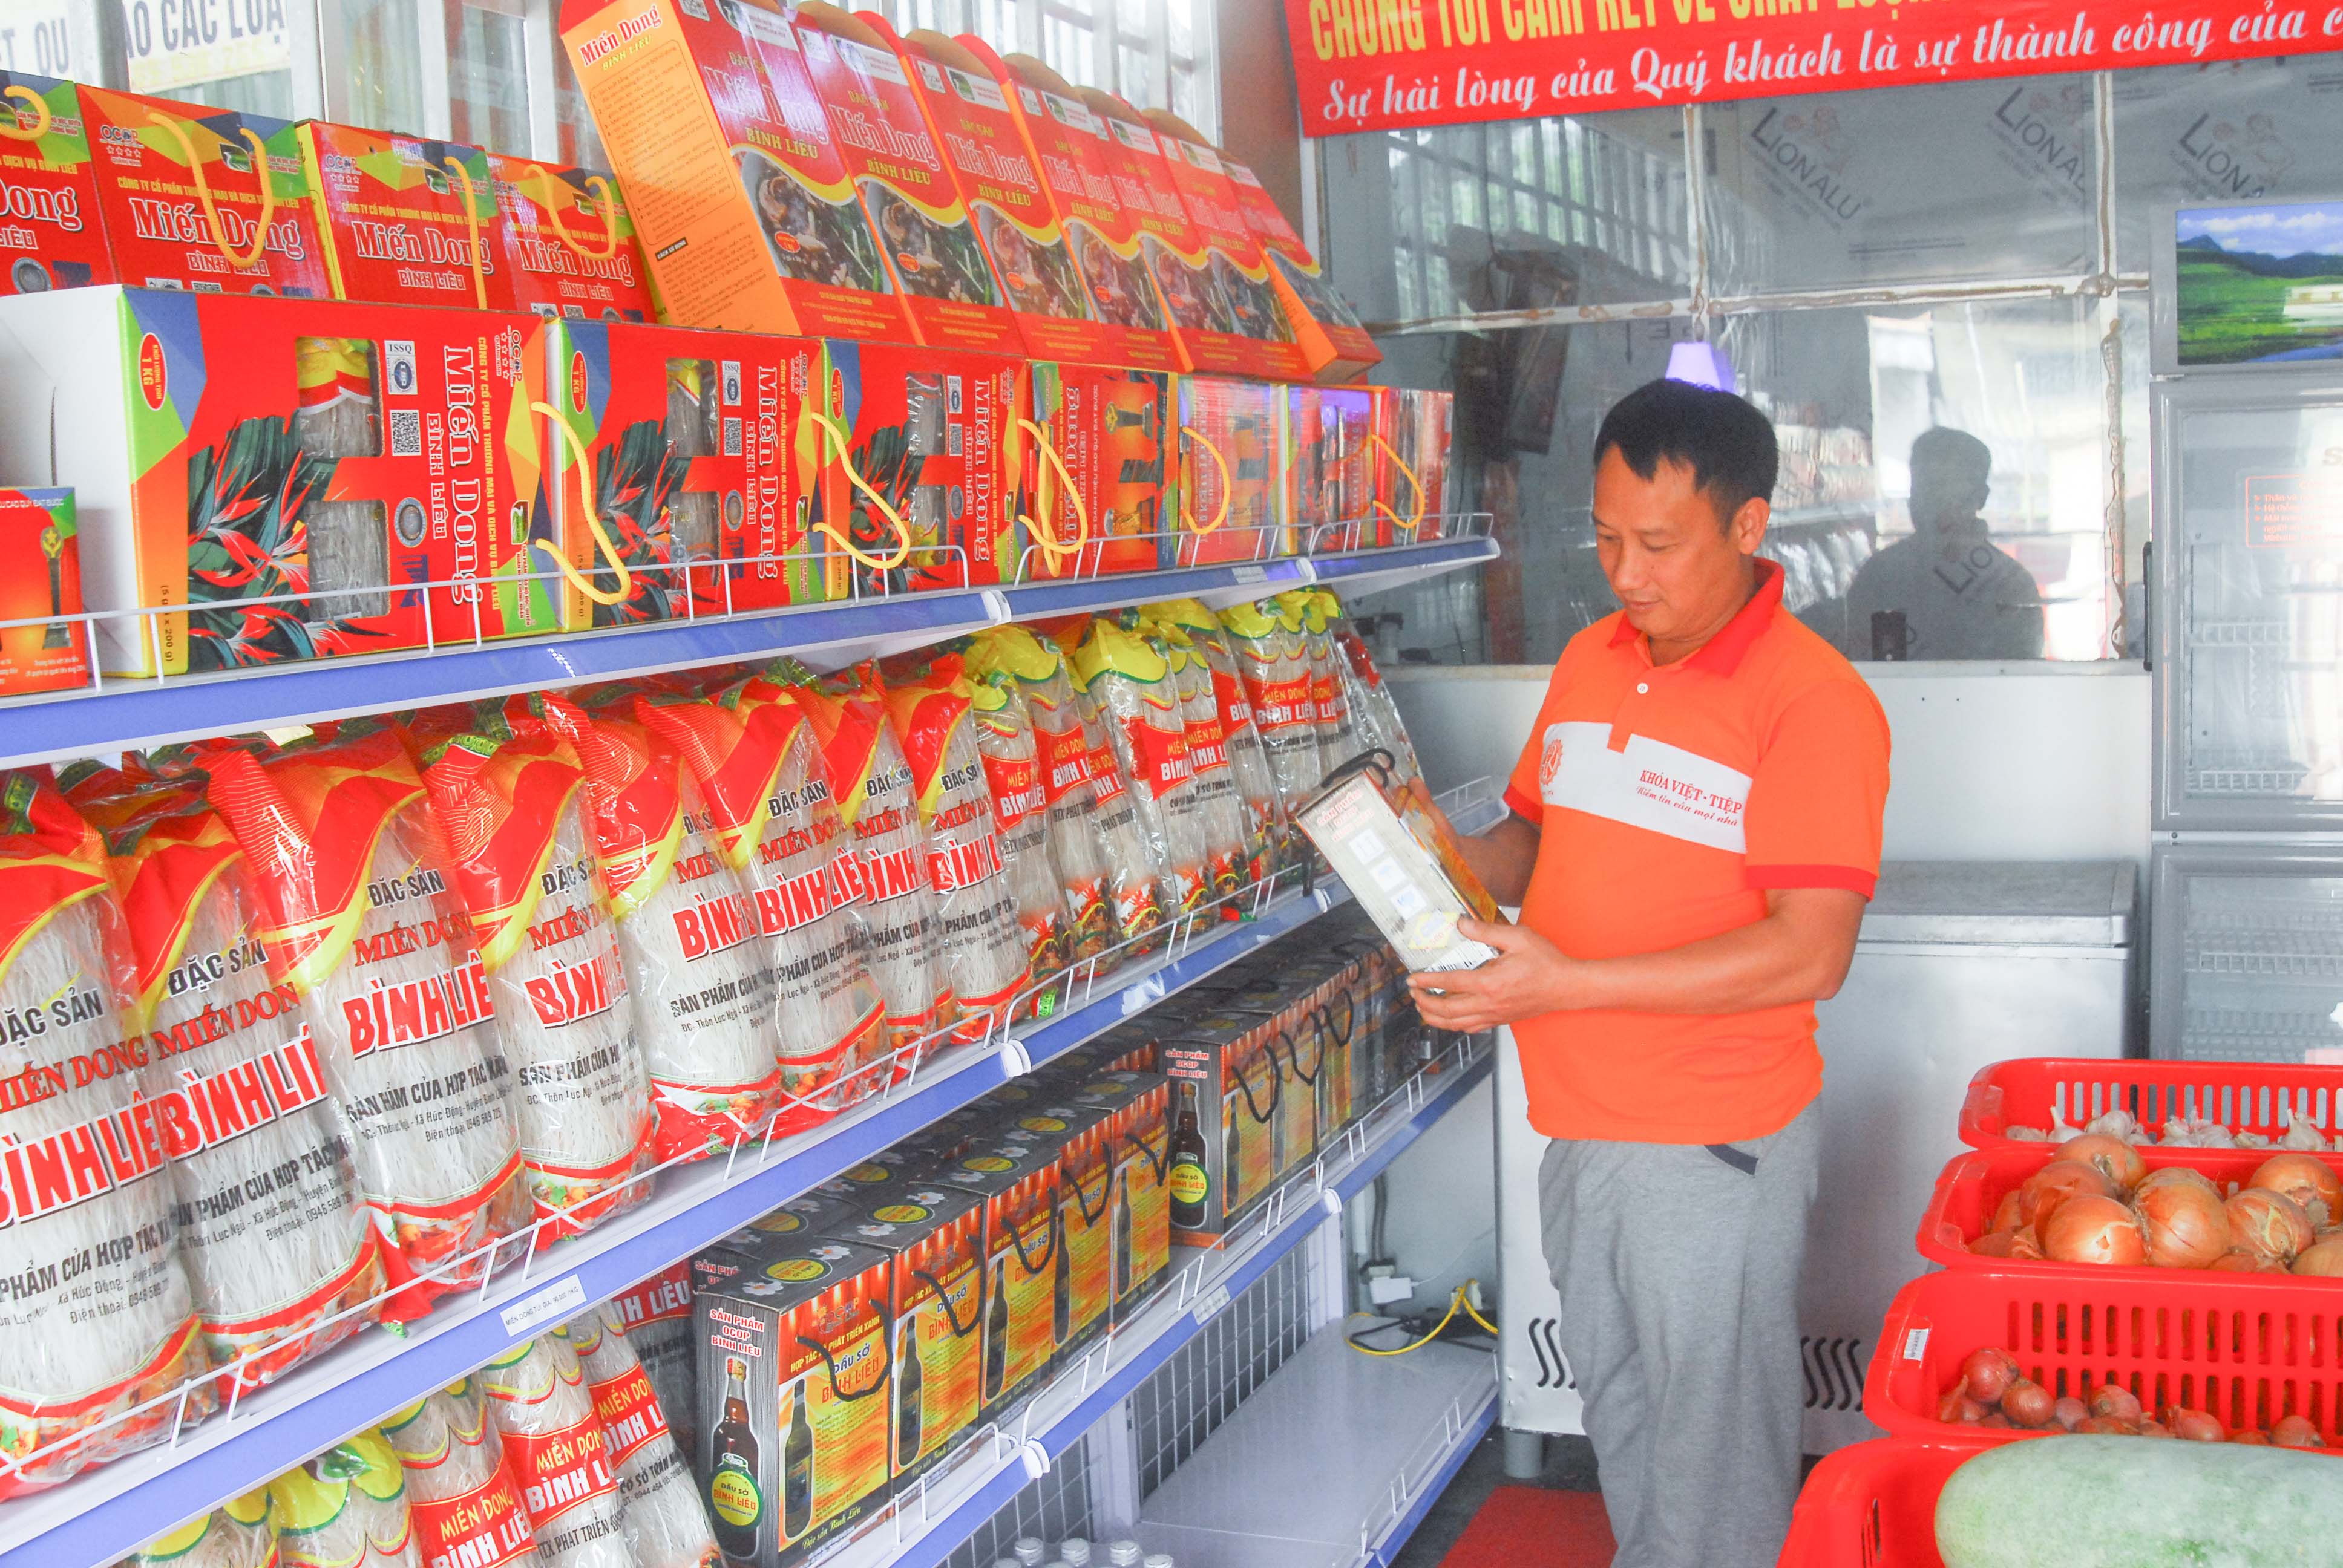 Nông sản Bình Liêu được bày bán tại Trung tâm Giới thiệu và Bán sản phẩm OCOP huyện.